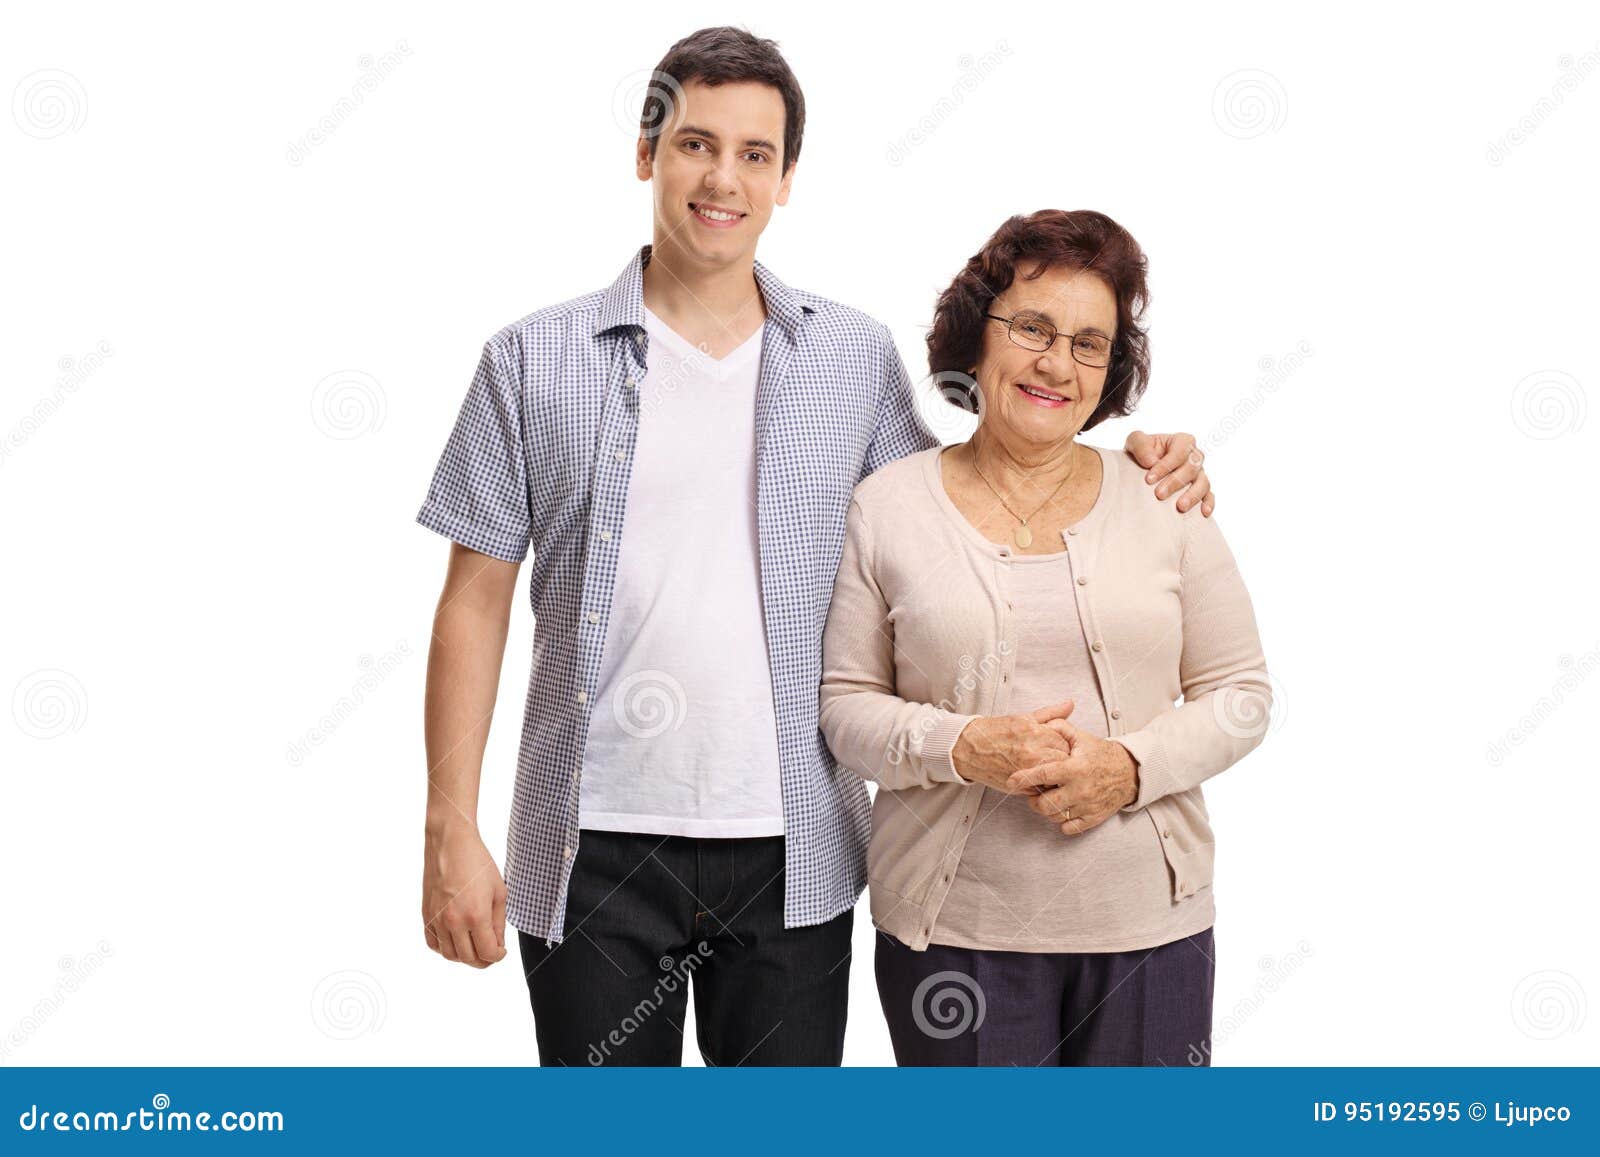 Зрелая женщина и молодой мужчина, мать и сын, дают друг другу пять